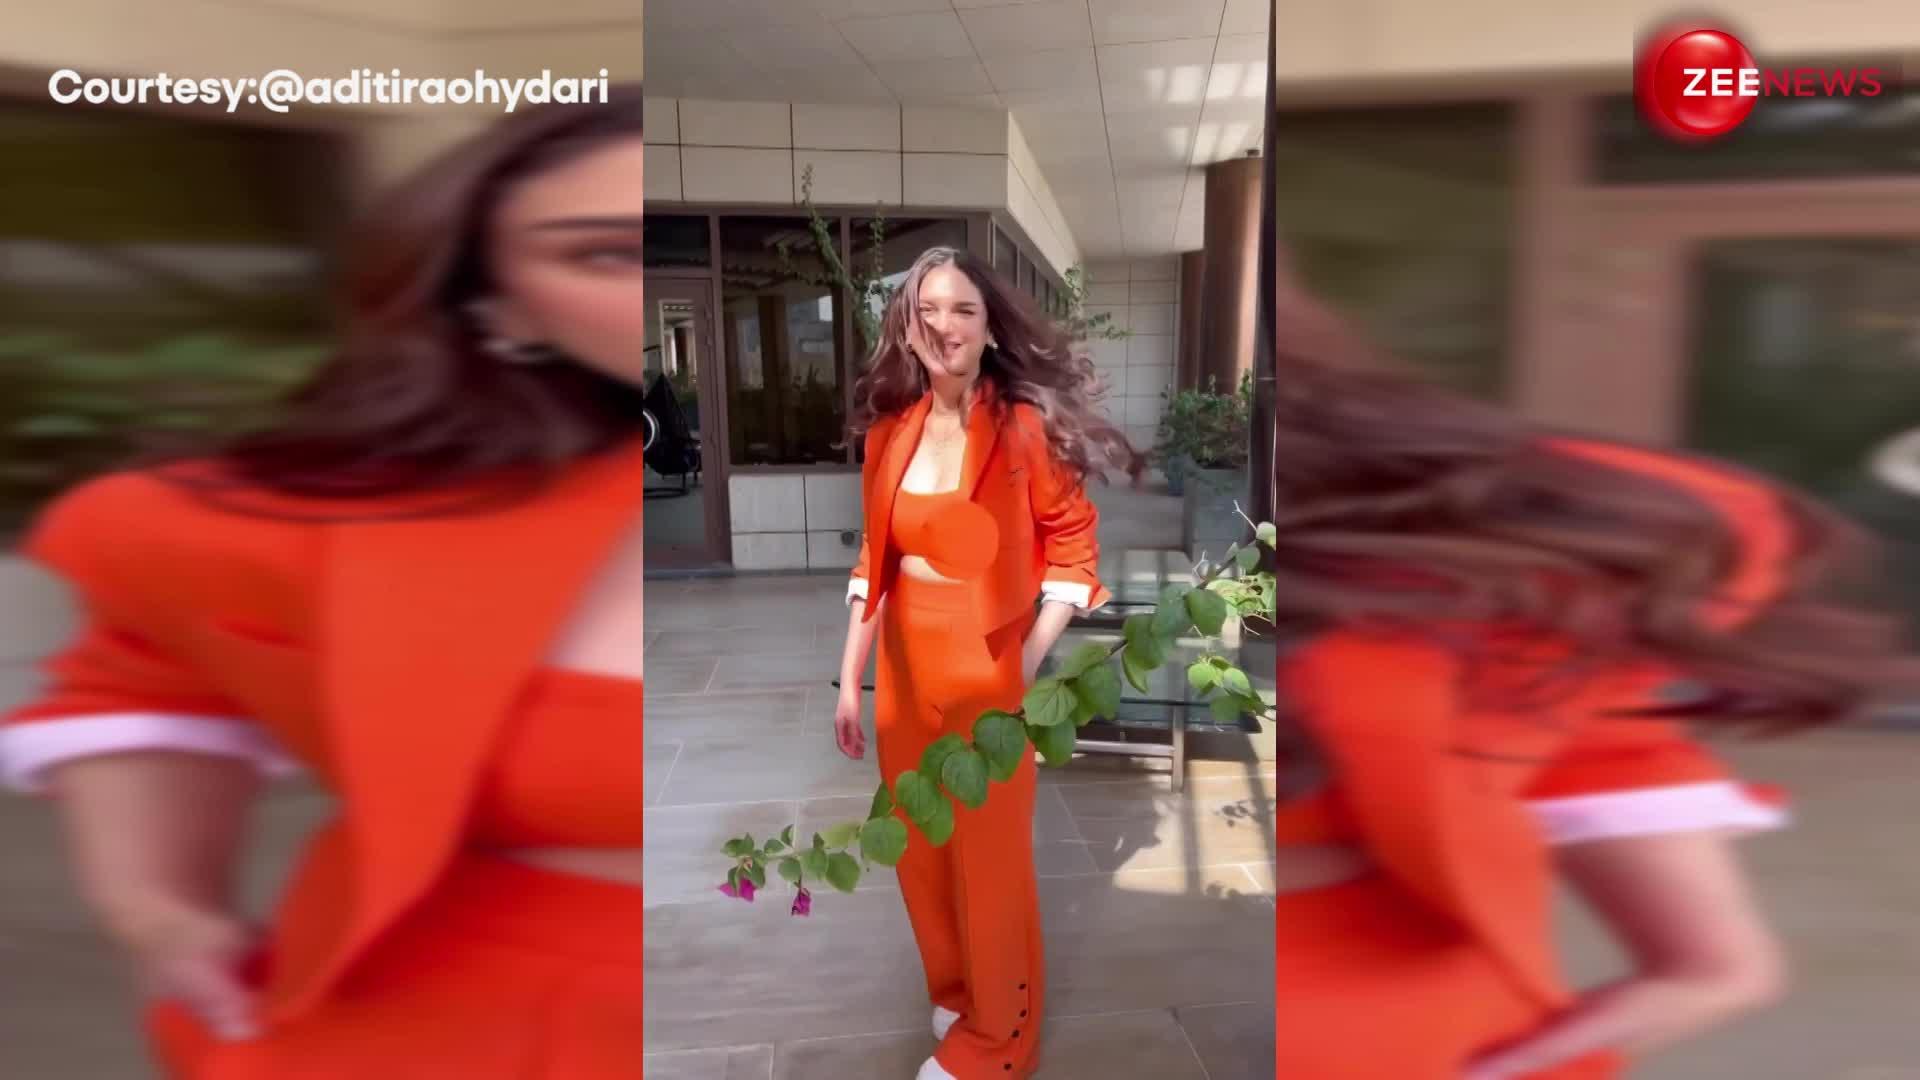 चटक संतरे रंग का Formal Outfit पहन Aditi Rao Hydari ने कराया जबरदस्त Photoshoot, मिनटों में हुआ वायरल